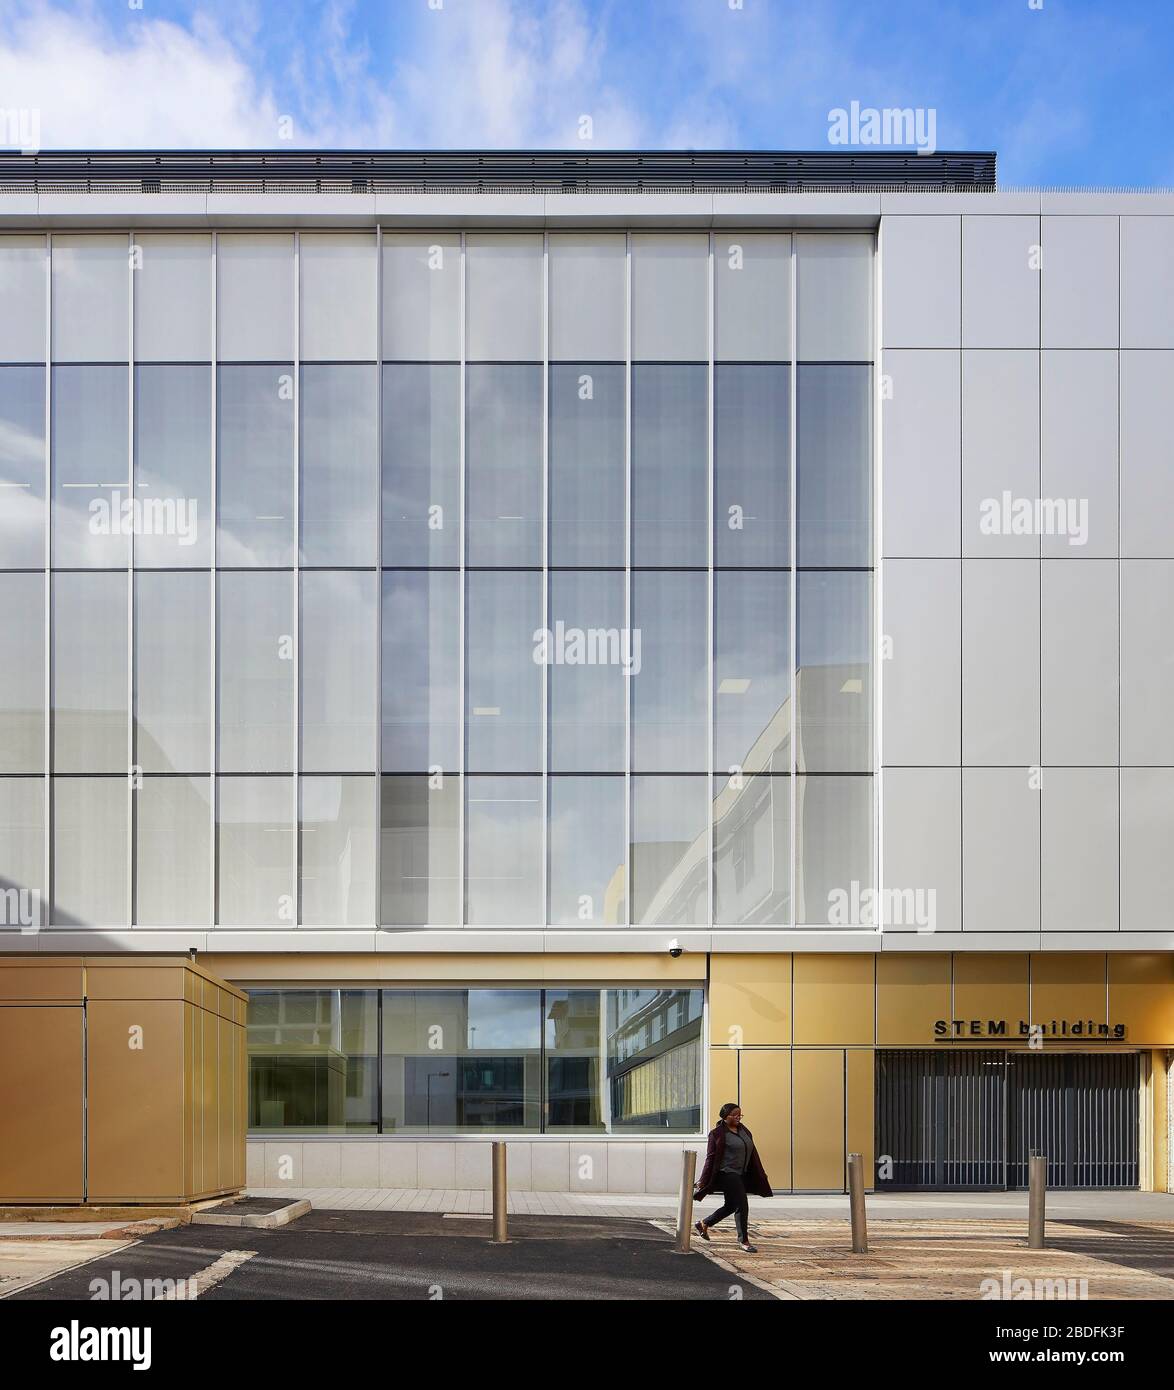 Élévation latérale du bâtiment. BÂTIMENT STEM - Université du Bedforshire, Luton, Royaume-Uni. Architecte: MCW, 2019. Banque D'Images